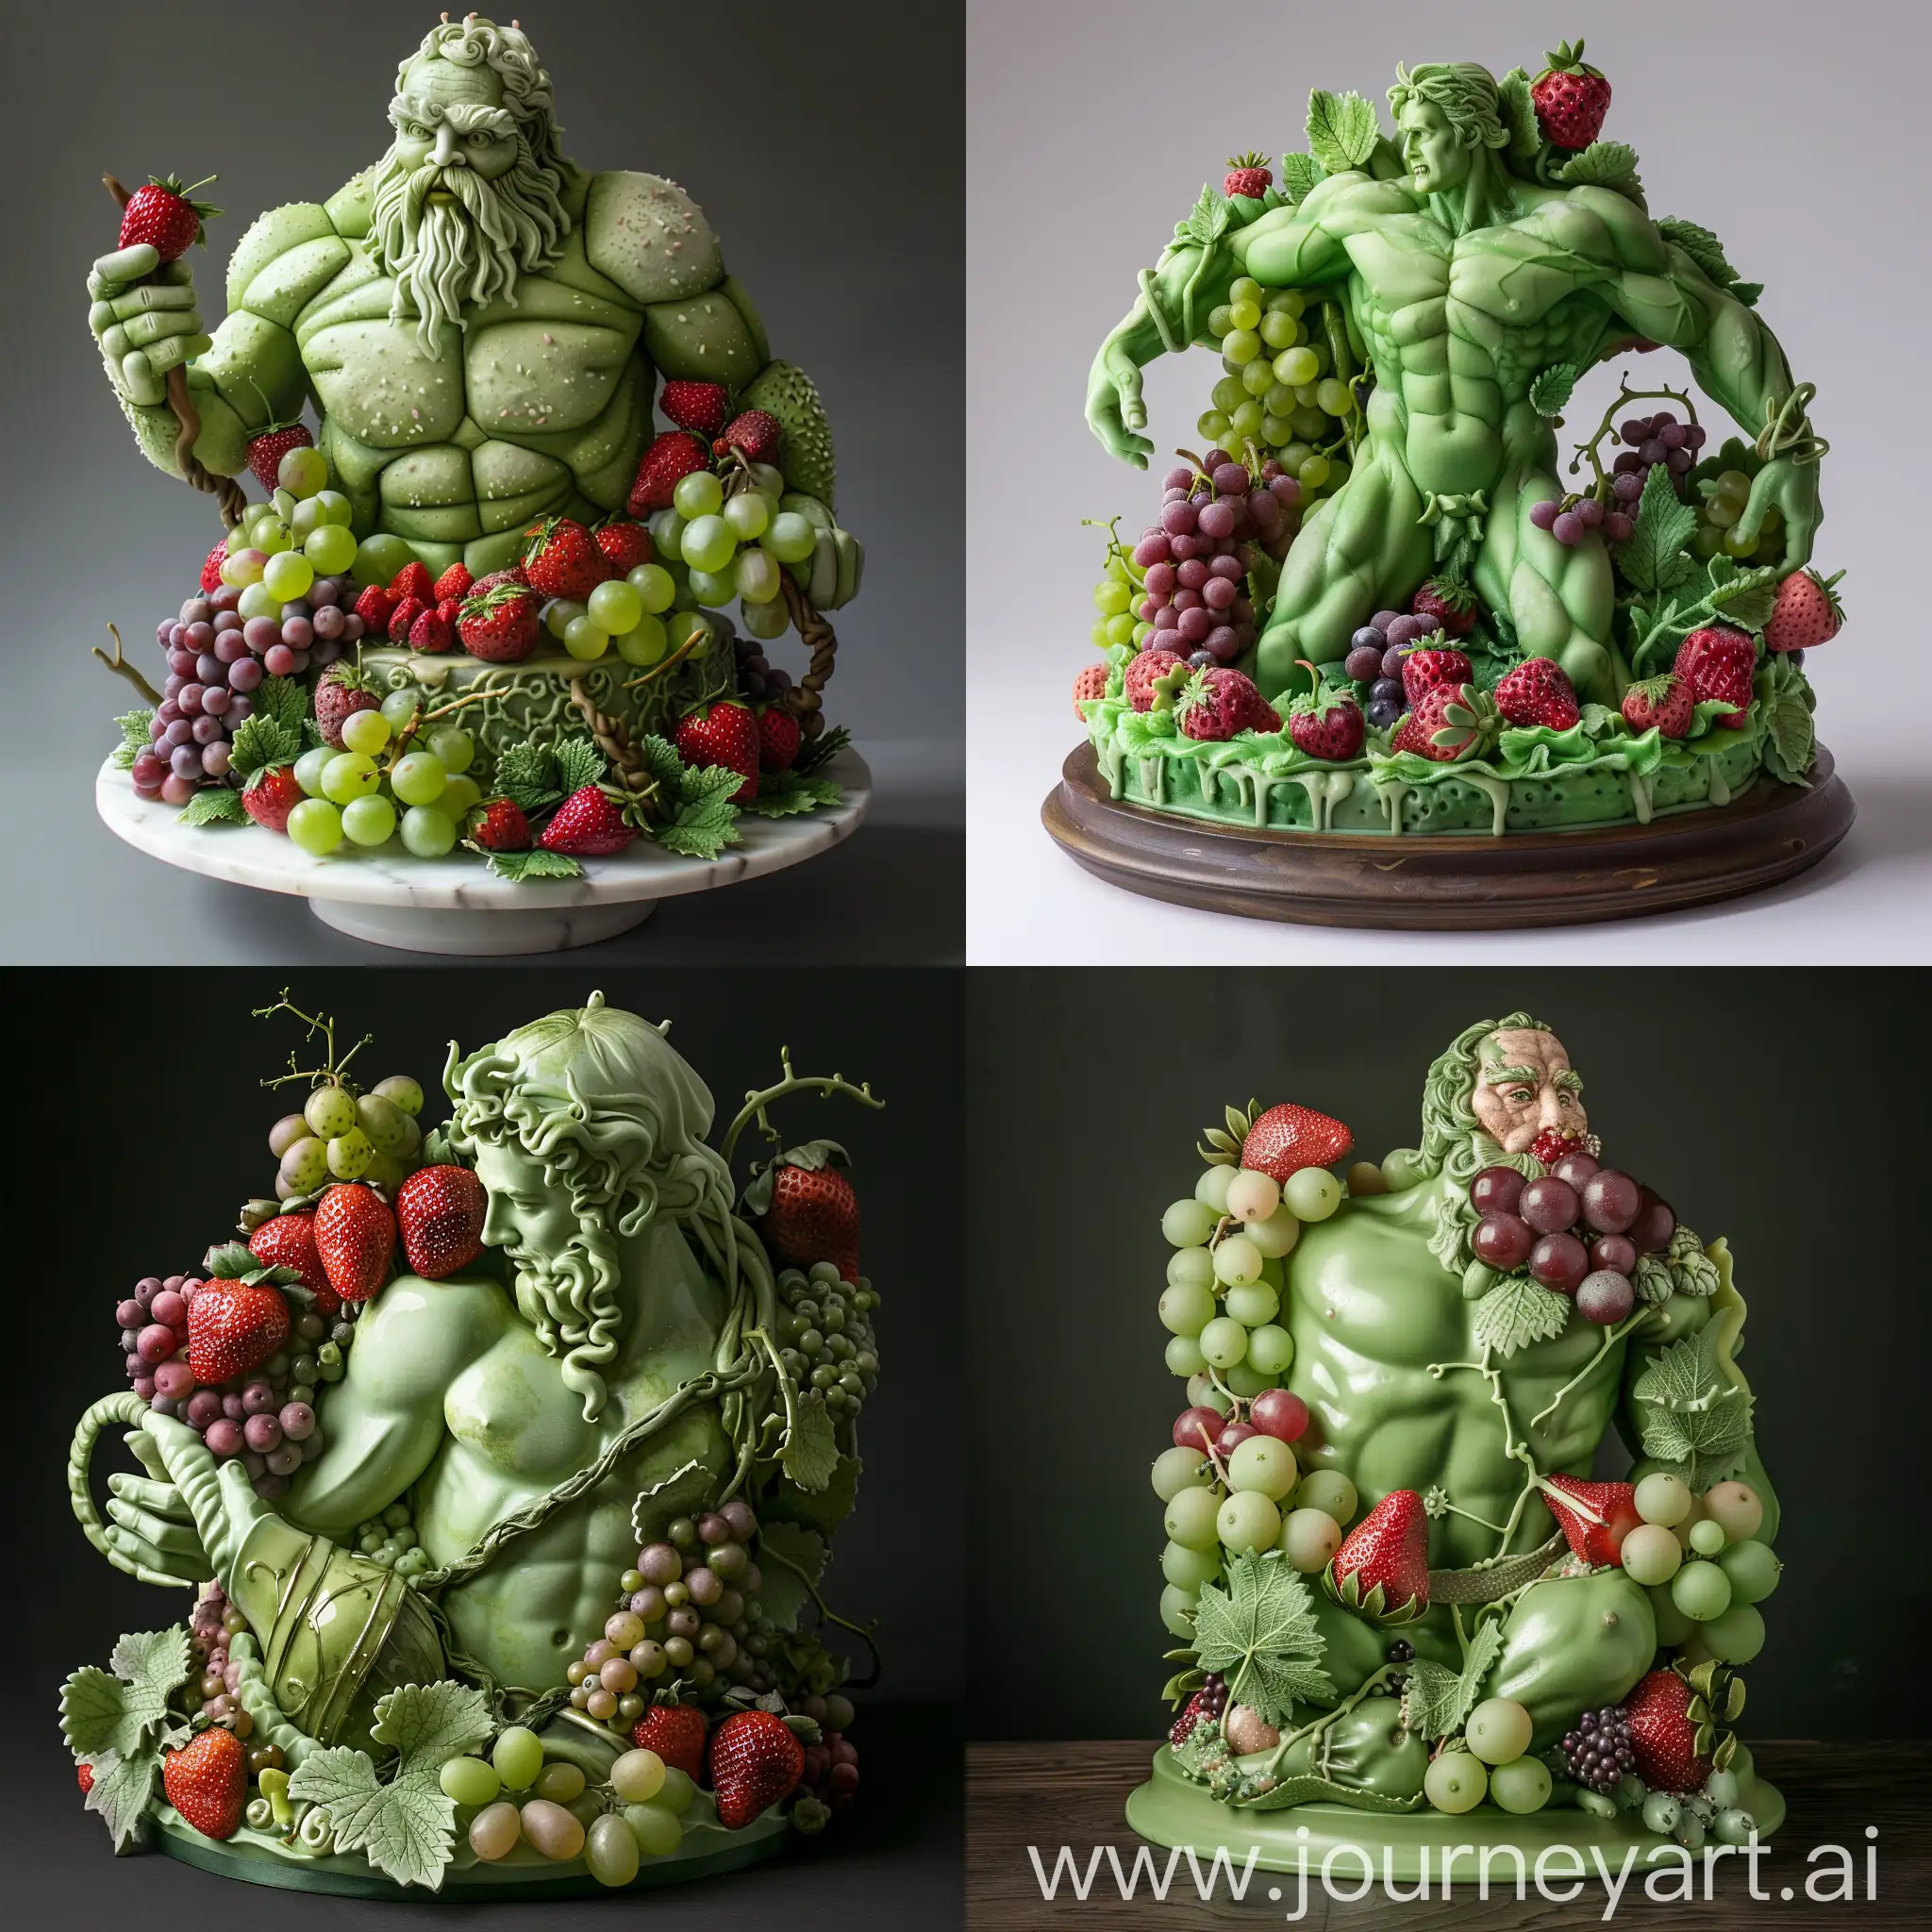 скульптура атланта в виде зеленого торта с клубникой, виноградом и другими ягодами